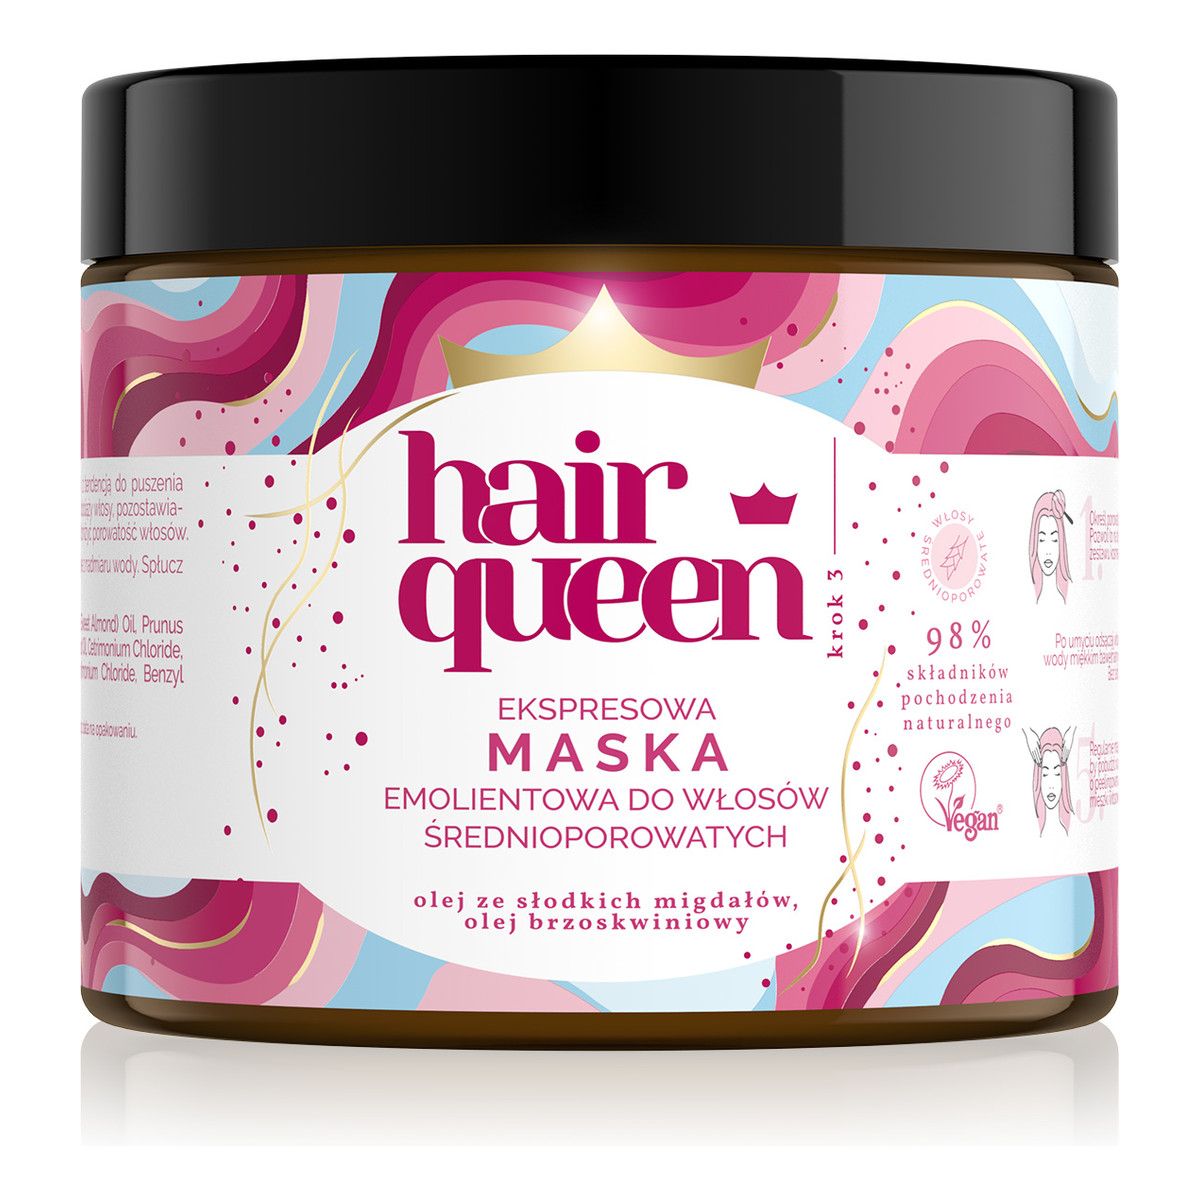 Hair Queen Ekspresowa maska emolientowa do włosów średnioporowatych